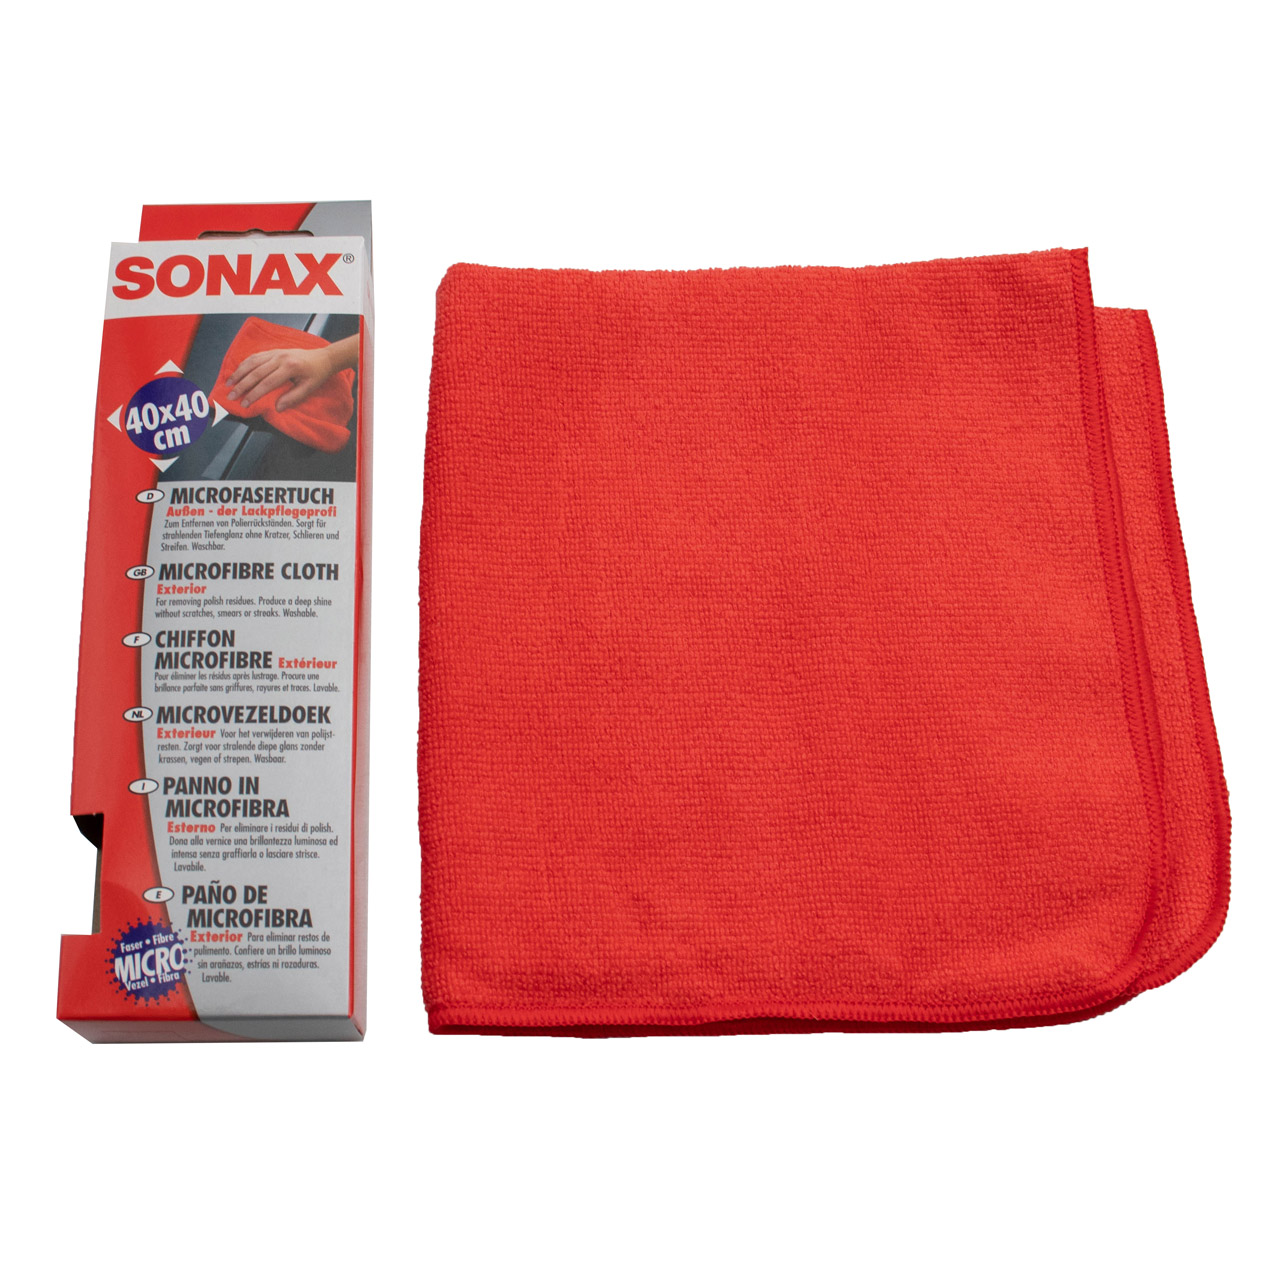 SONAX Microfasertuch Außen- Lackpflegeprofi Pflege Reiniger 40x40 cm 416200